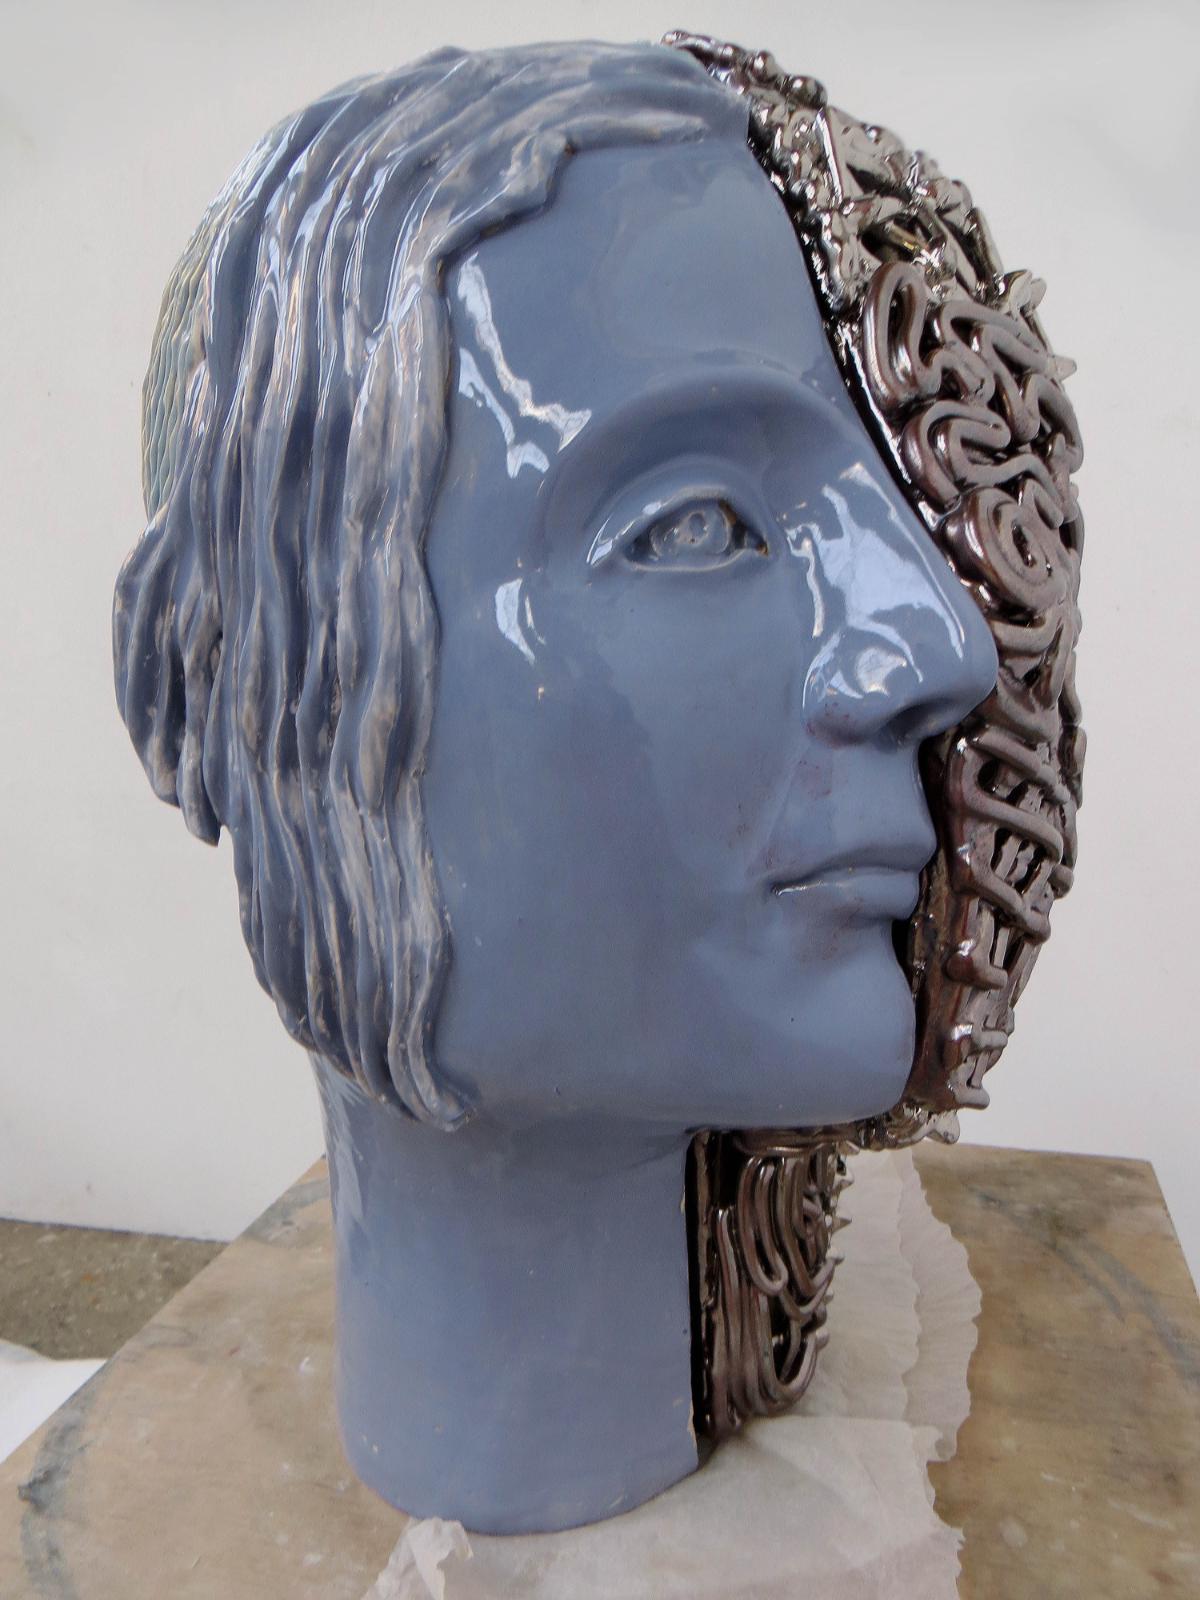 Stephan Hasslinger, Hybrid, 2021, Keramik, Glasuren und Platin, 52 cm x 32 cm x 42,5 cm, Preis auf Anfrage, Galerie Cyprian Brenner